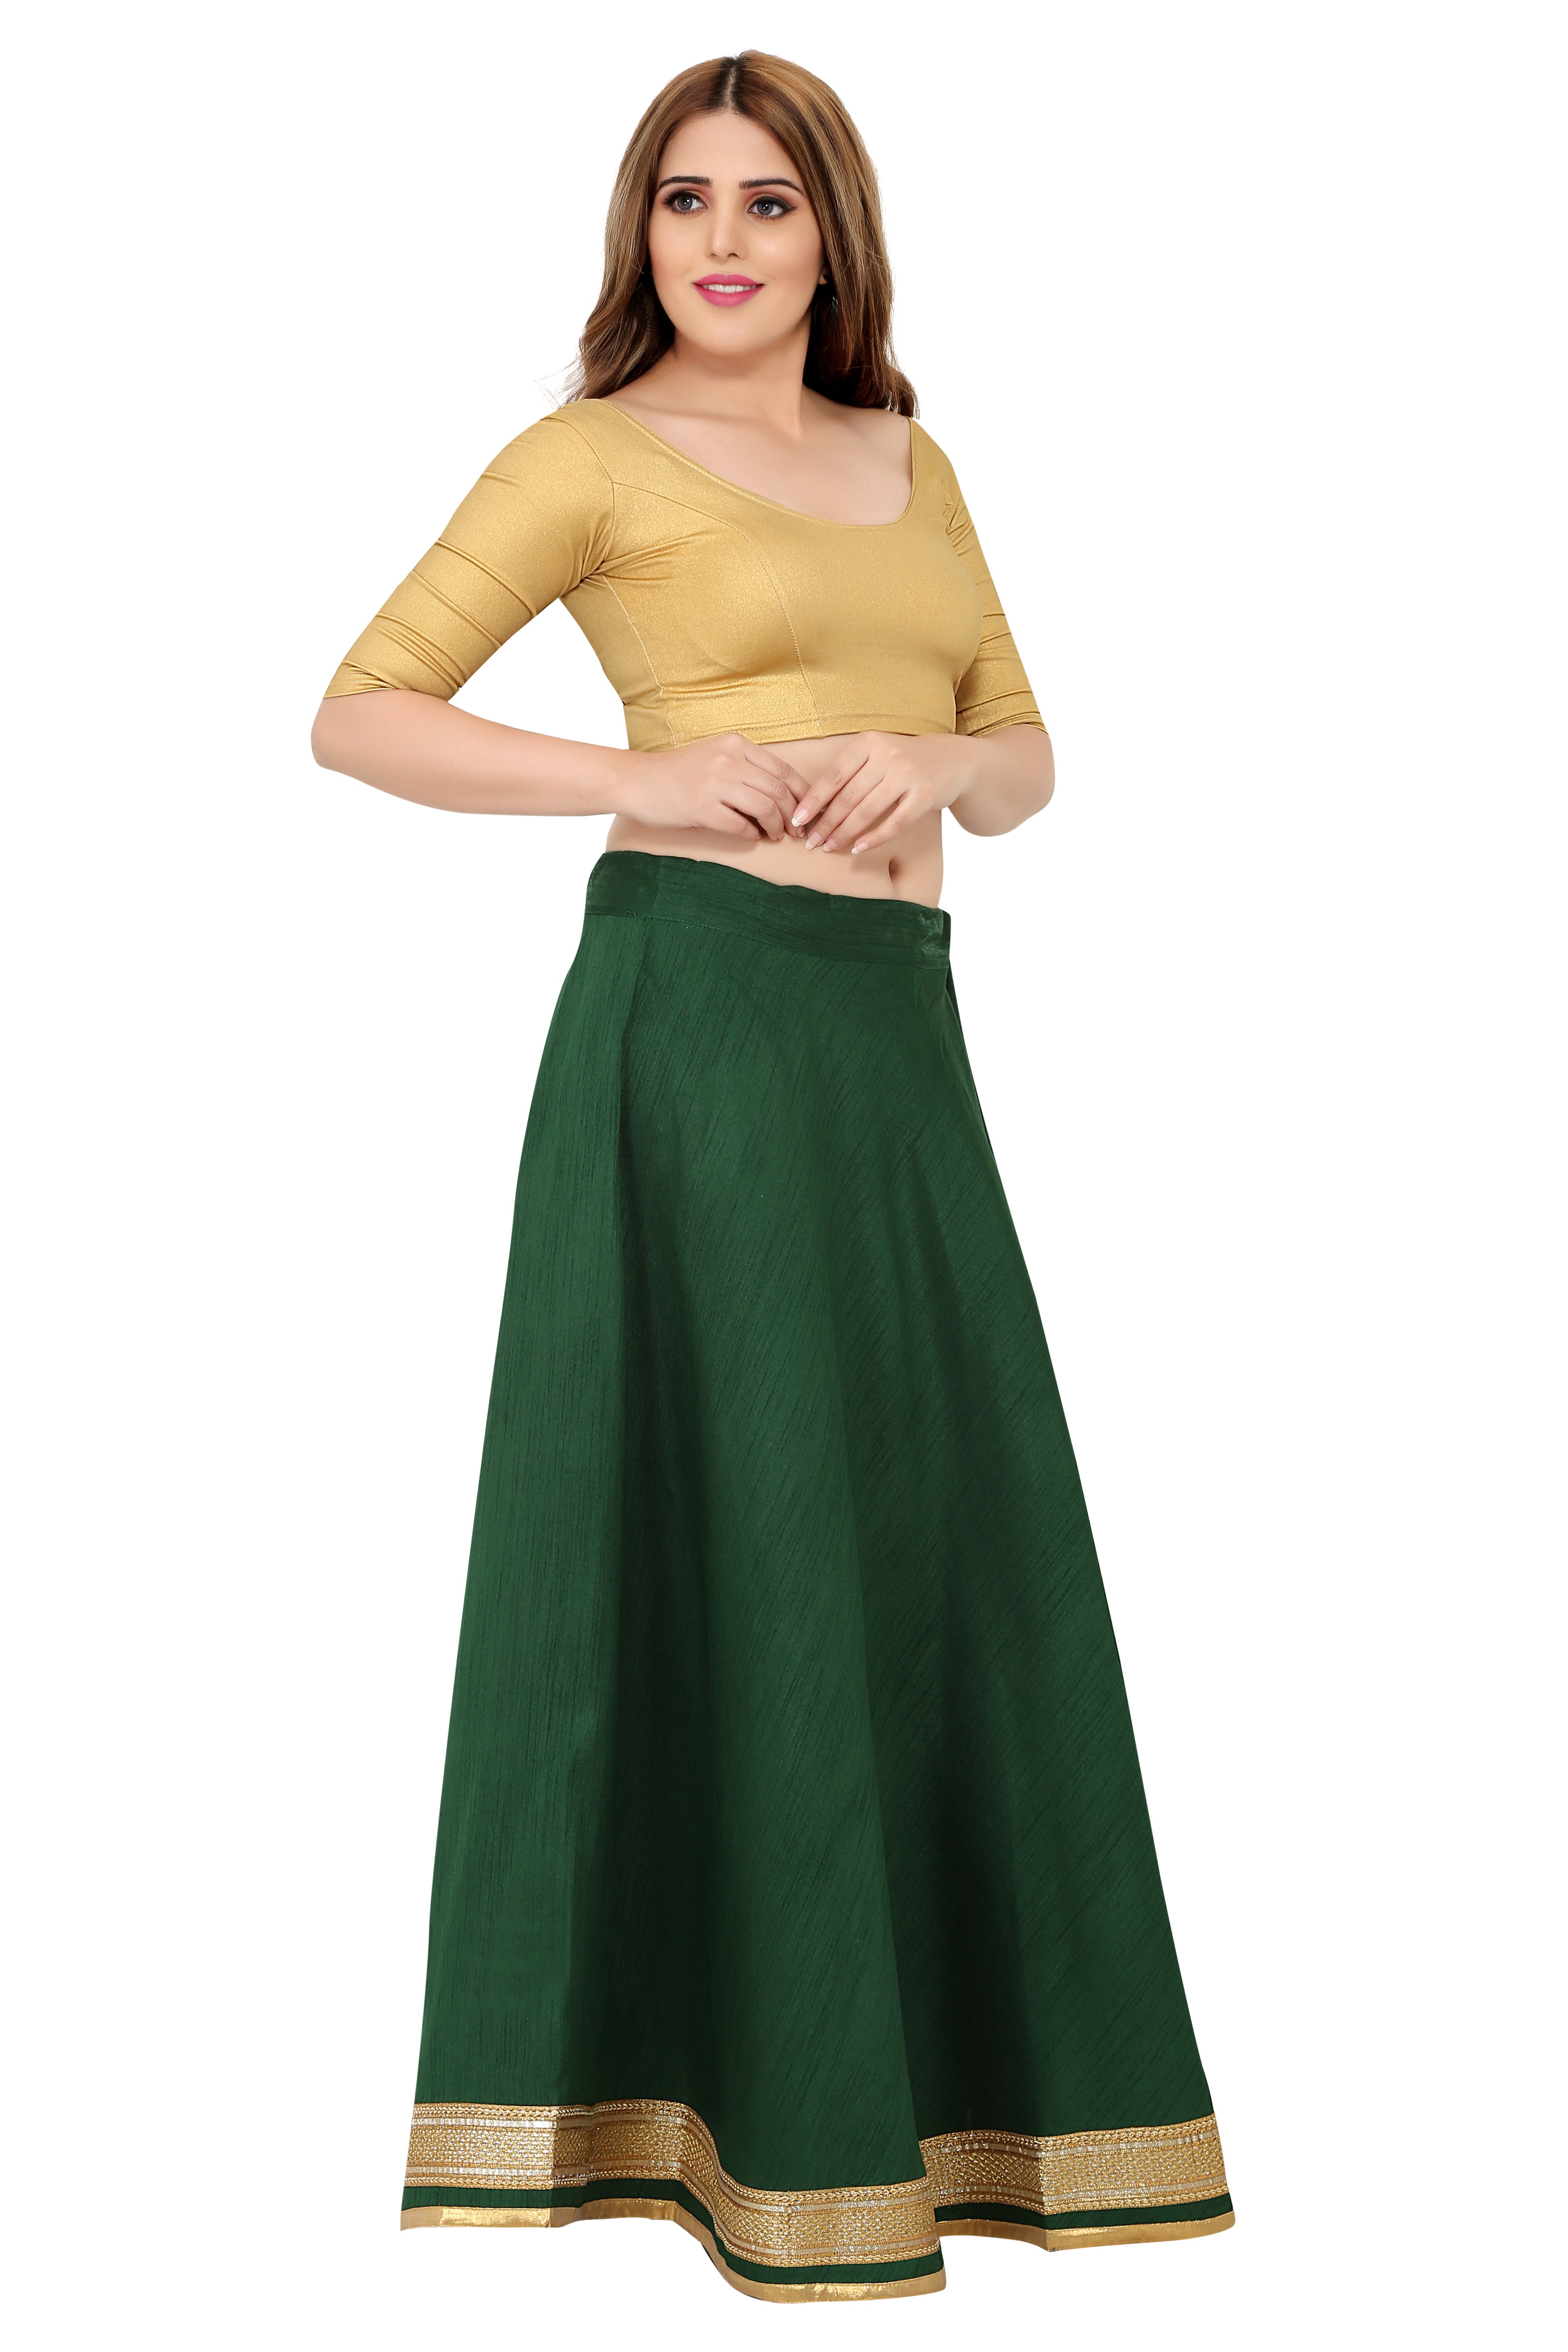 Leheriya Georgette Long Skirt in Green : BNJ201